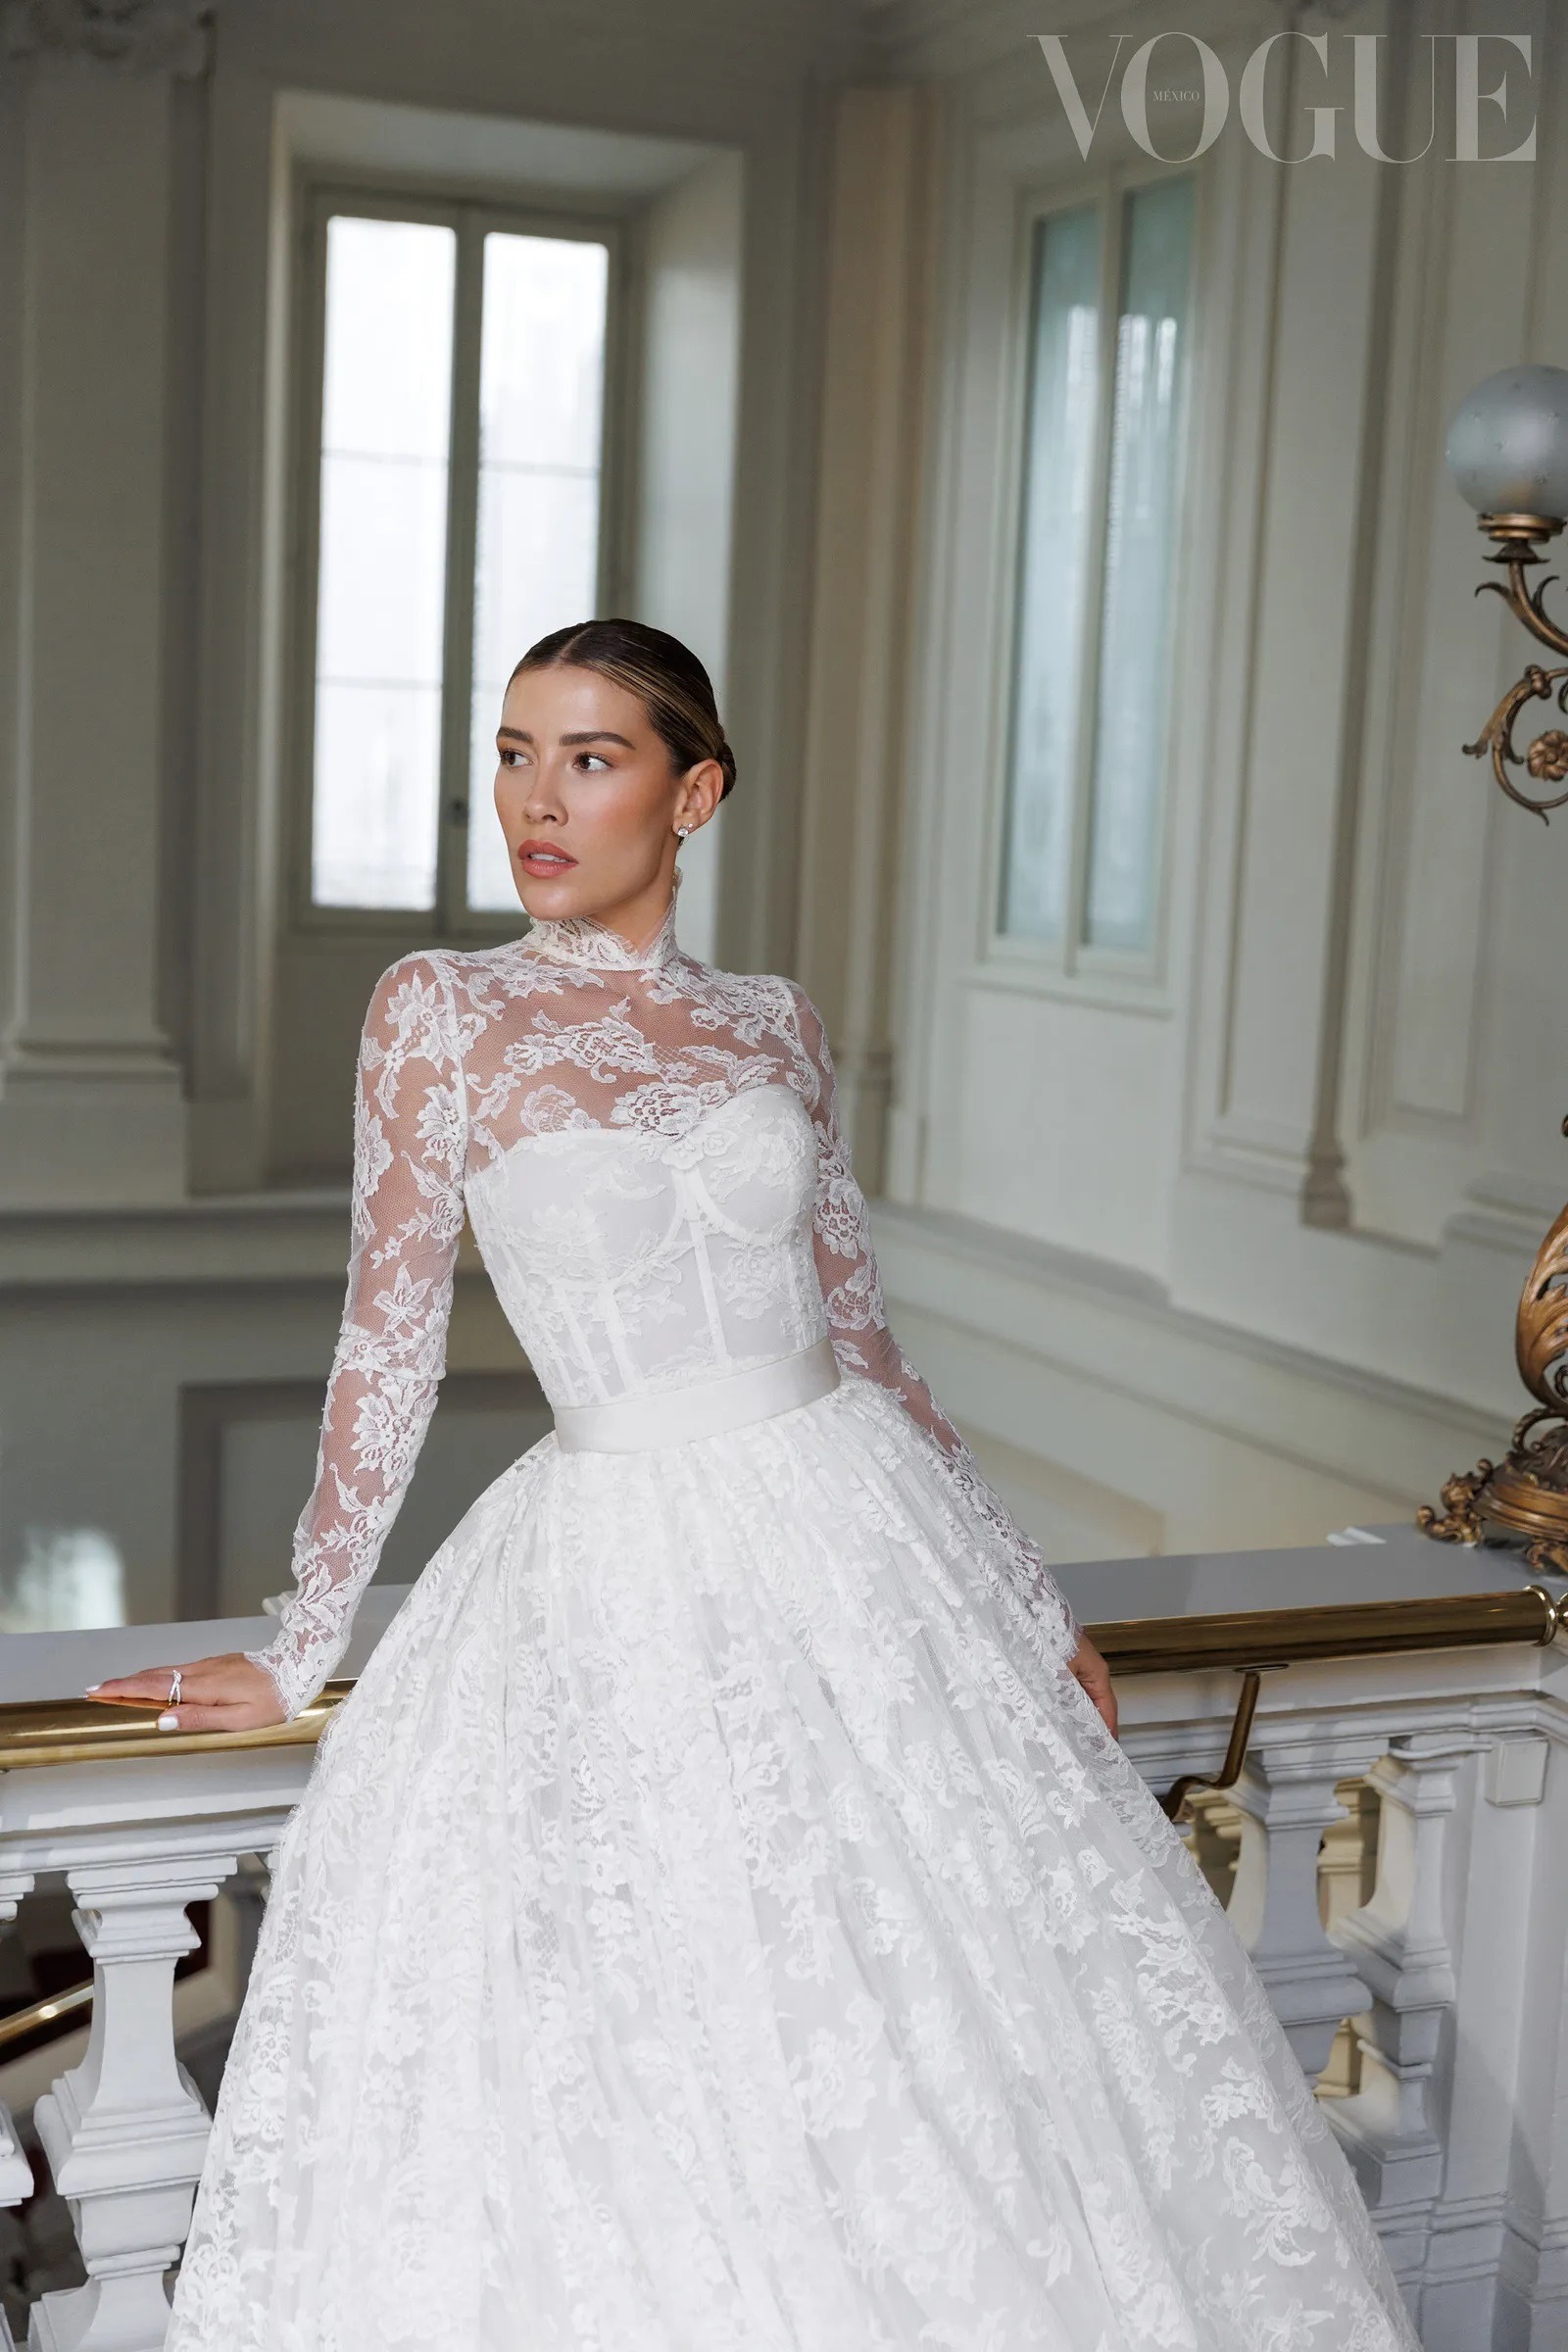 Michelle Salas luciendo su vestido de novia. Fuente: Vogue